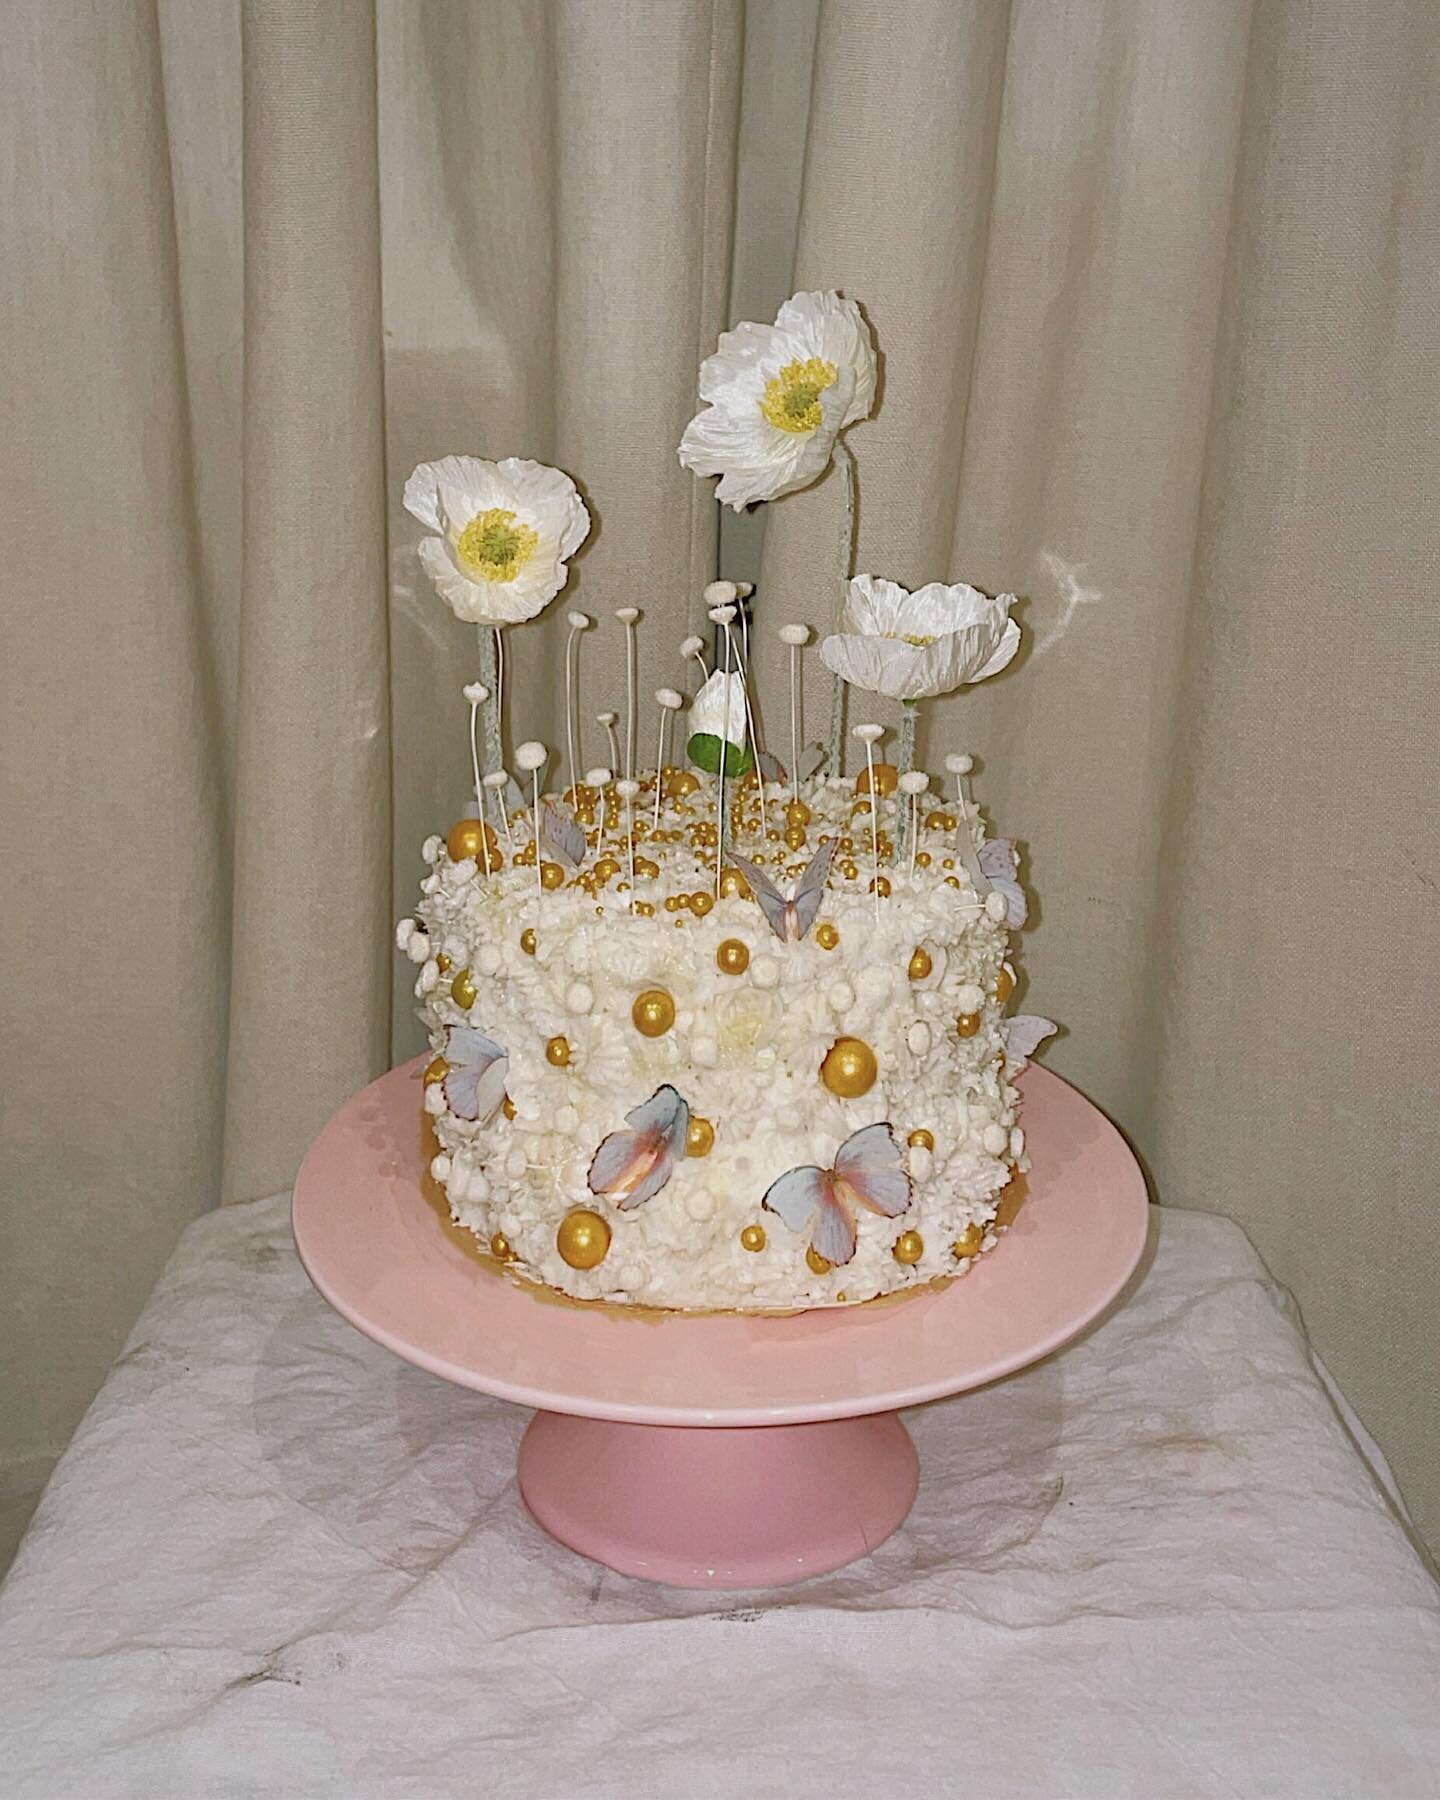 𝒲𝒽𝒾𝓉𝑒 𝒶𝓃𝒹 𝒢𝑜𝓁𝒹 moments 🤍🎂⭐️🤍🎂⭐️🤍🎂⭐️🤍

Mini stacked double lemon cake 🤍

#cake #cakedecorating #cakes #birthdaycake #cakeart #cakedecorating #cakedesign